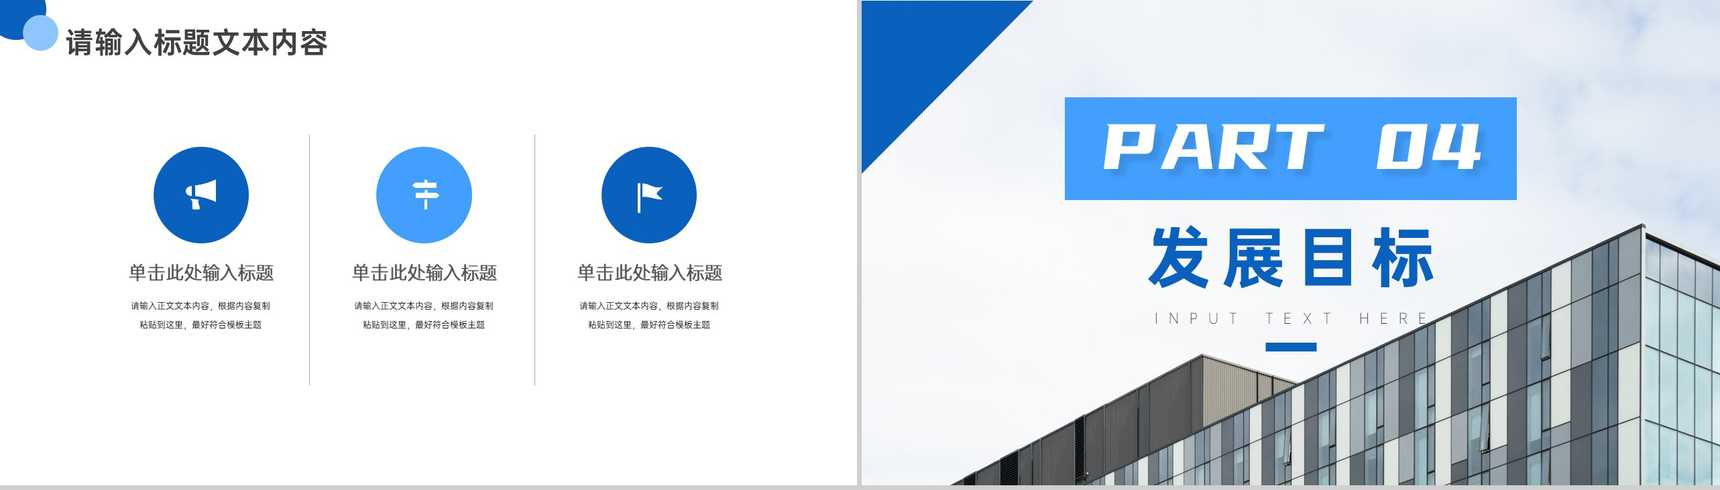 蓝白简约商务背景建筑公司企业介绍PPT模板-7